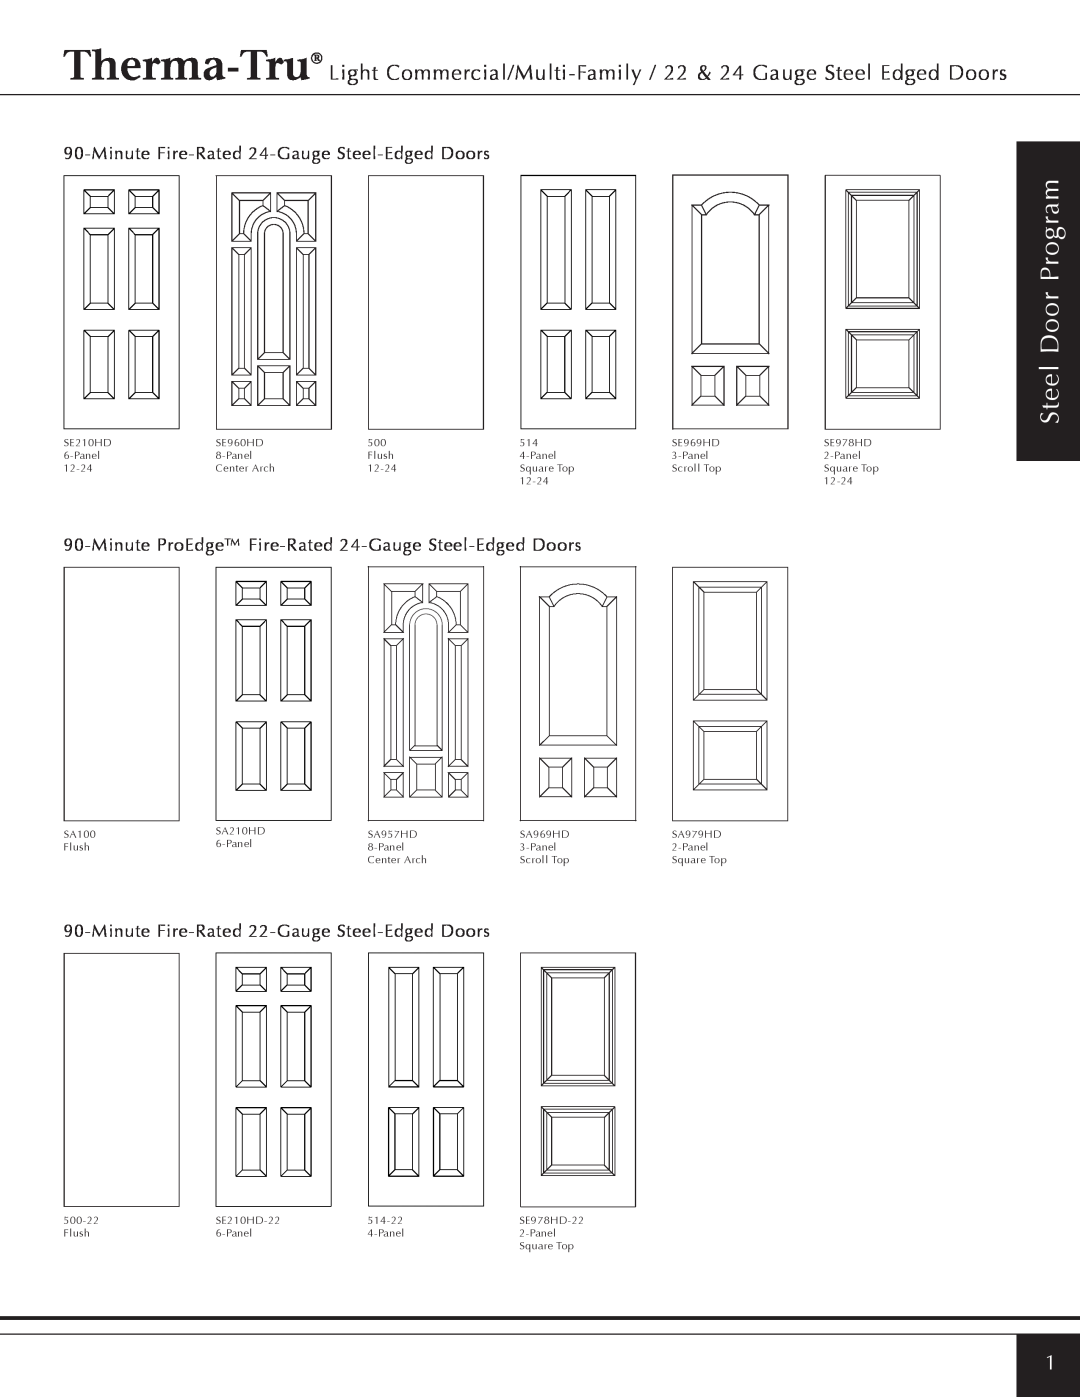 Therma-Tru Light Commercial/Multi-Family / 22 & 24 Gauge Steel Edged Door manual Steel Door Program 